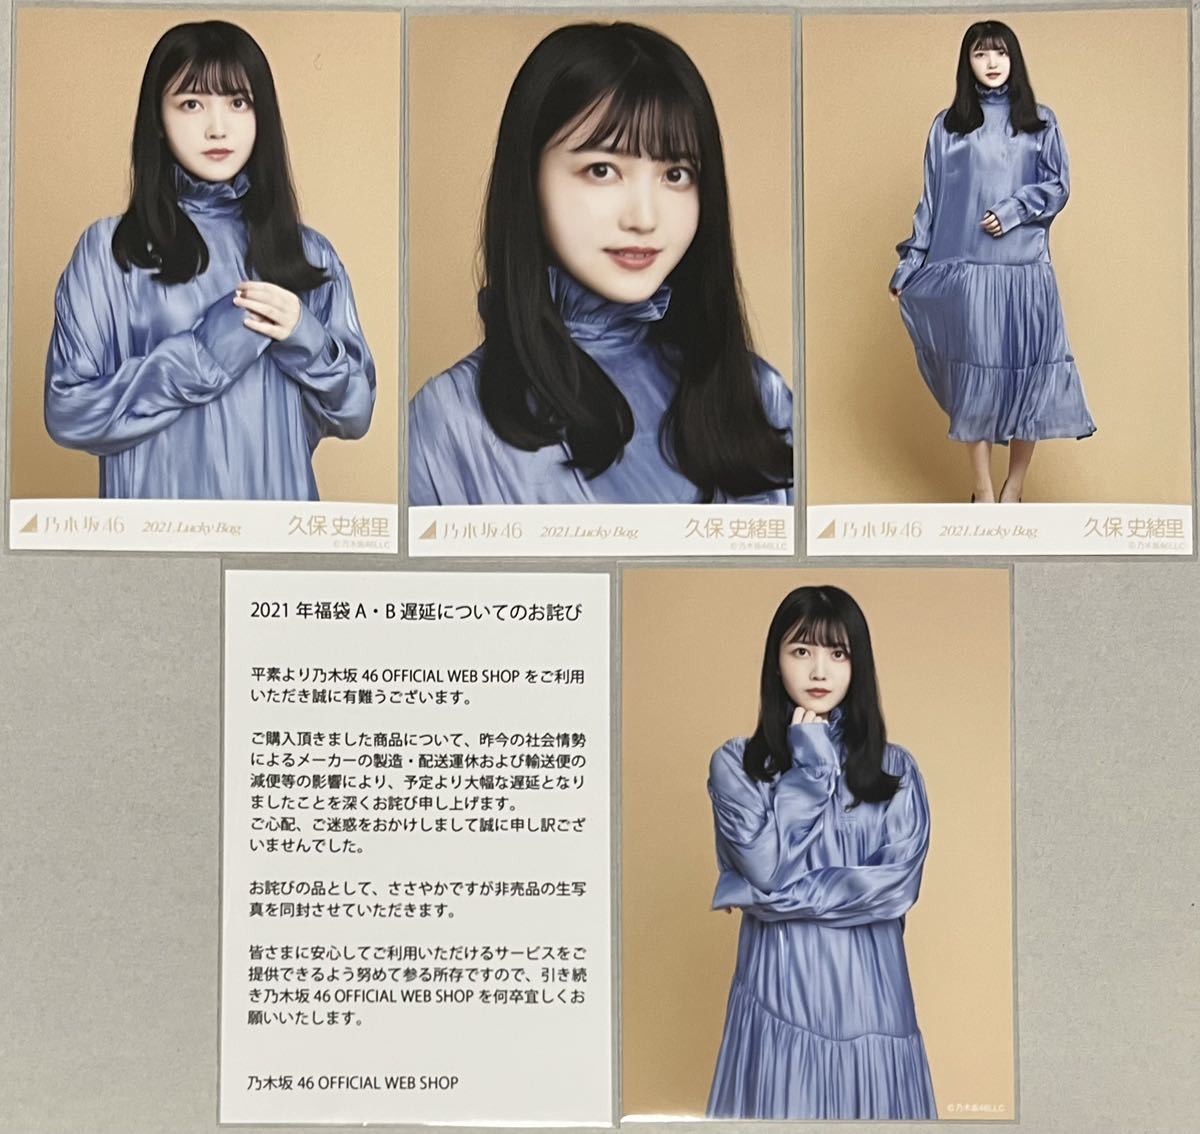 Nogizaka46 Shiori Kubo WEB SHOP Limited 2021 Lucky Bag Lucky Bag 3 types Pas à vendre Excuses pour le retard 4 Photos Comp Test complet) Yori Chu Hiki 3ème génération Certificat inclus, Ligne Na, de, Nogizaka46